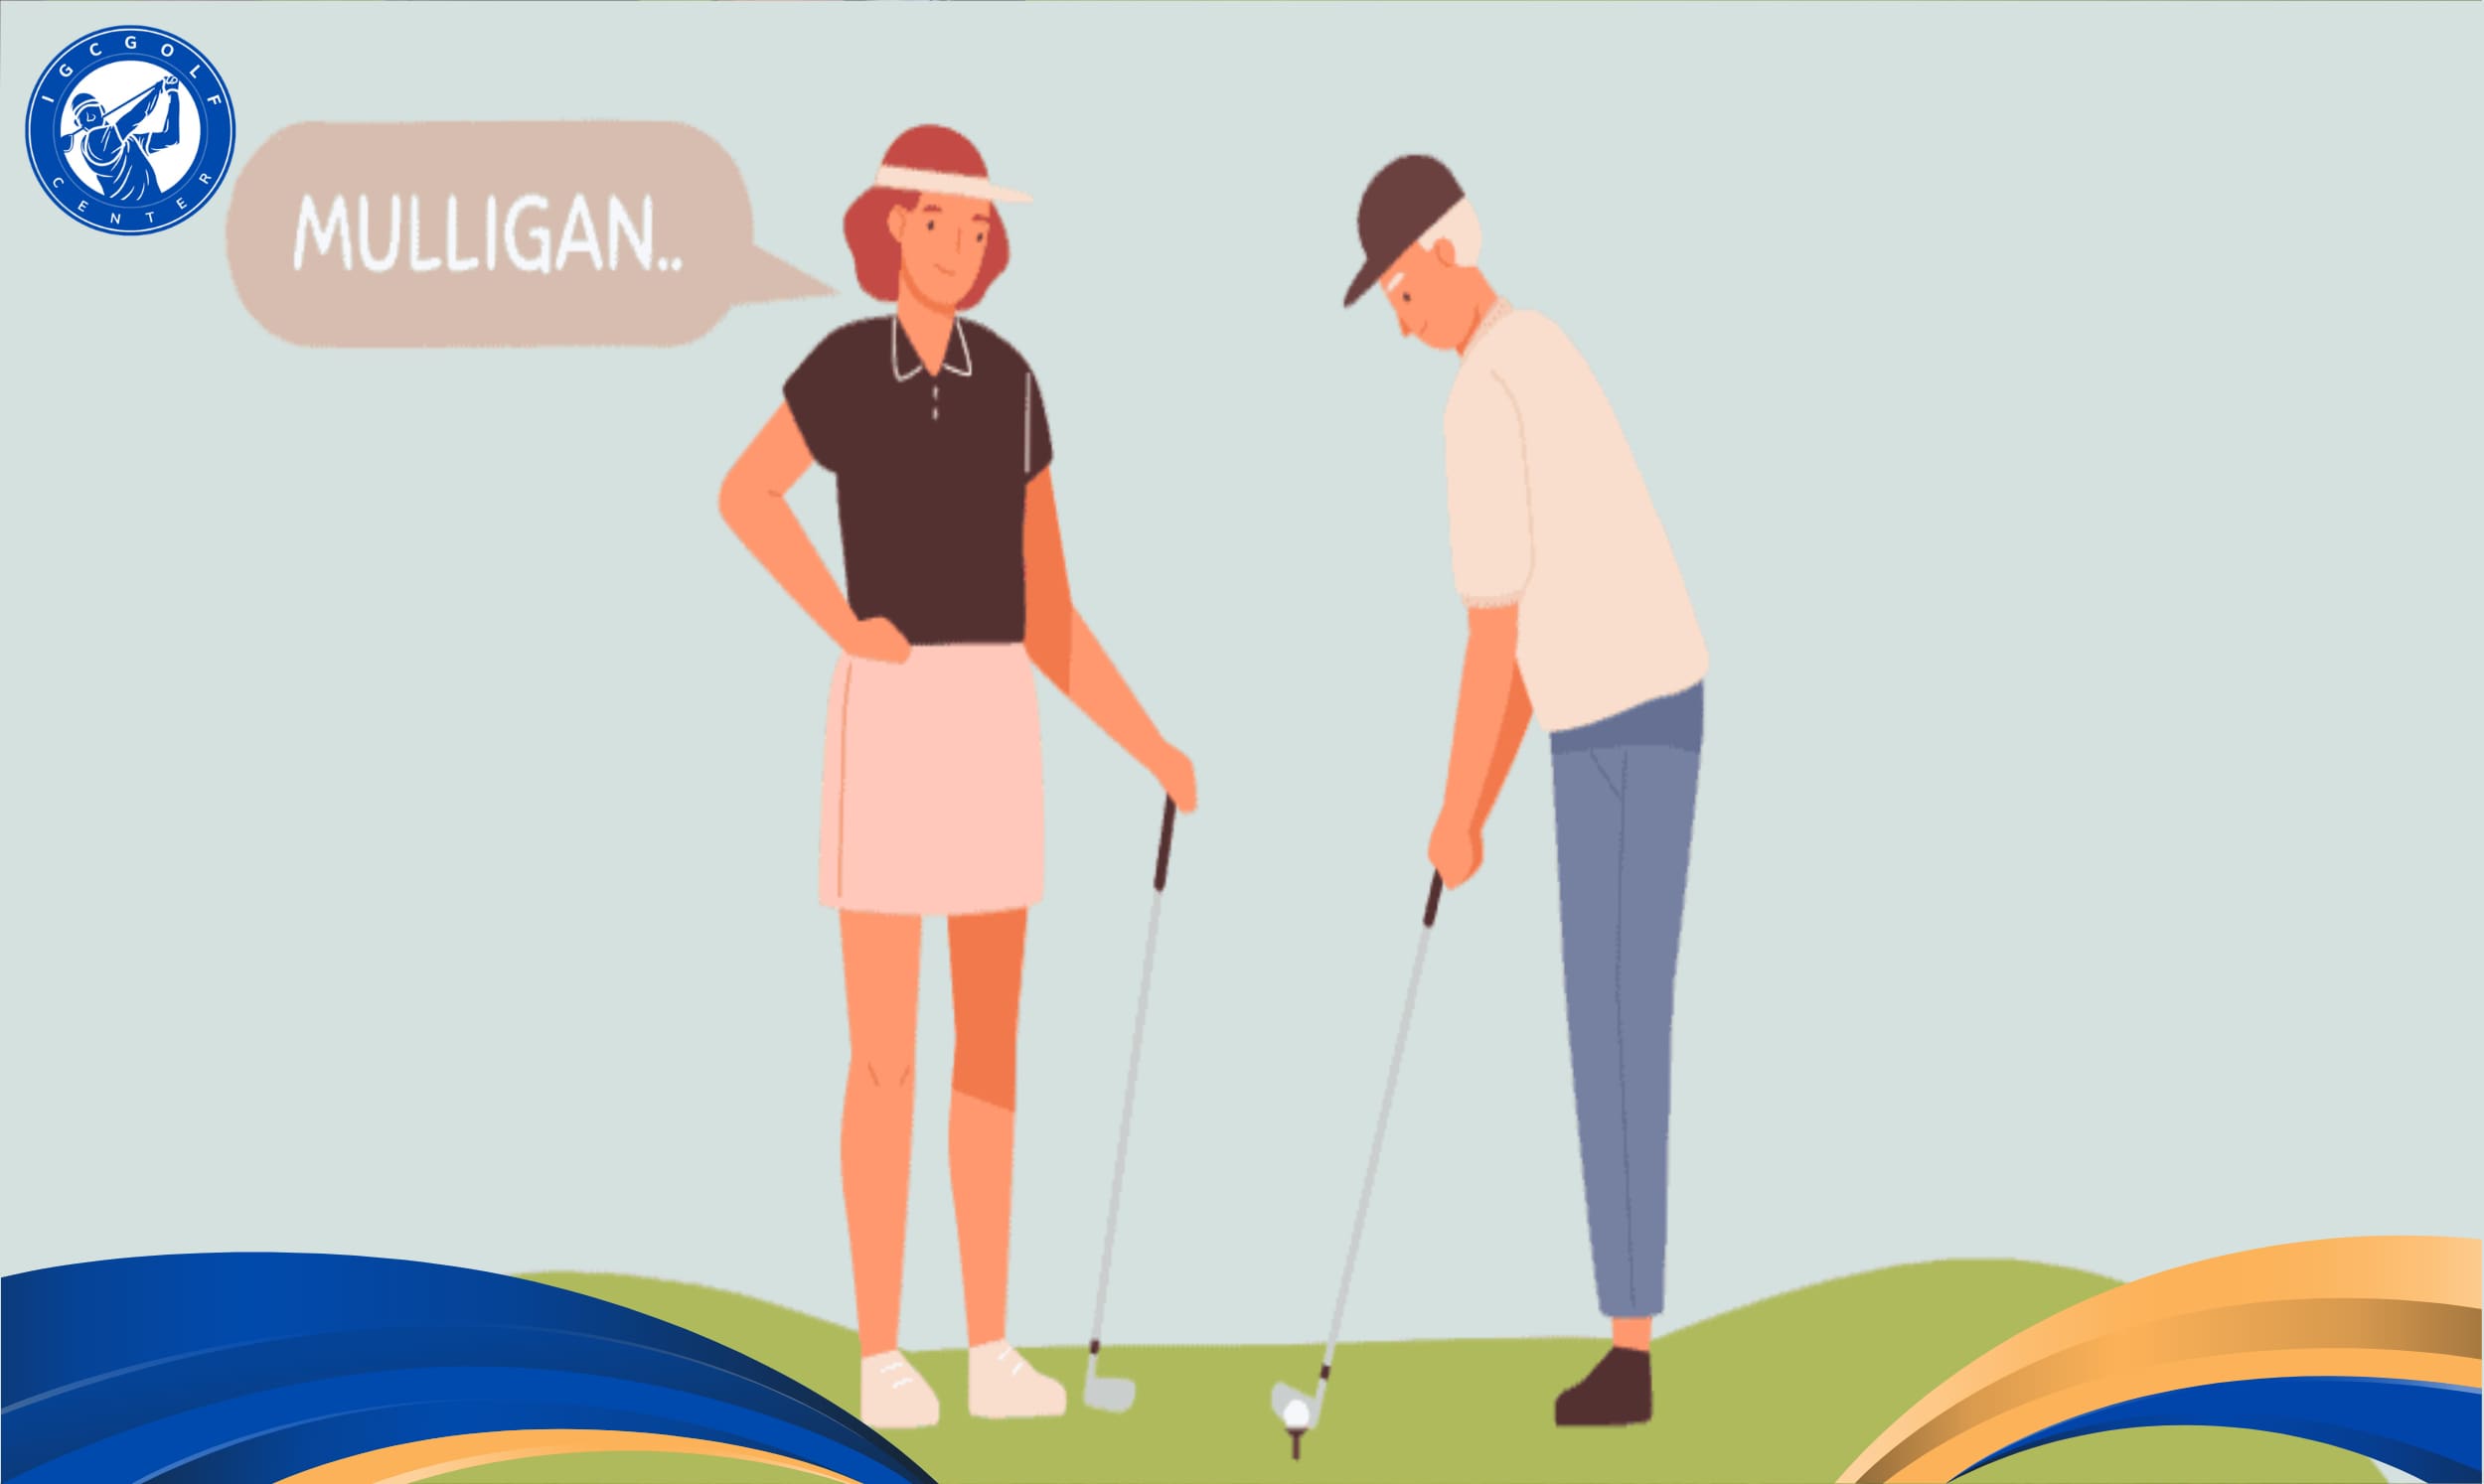 Định nghĩa về mulligan là gì trong golf